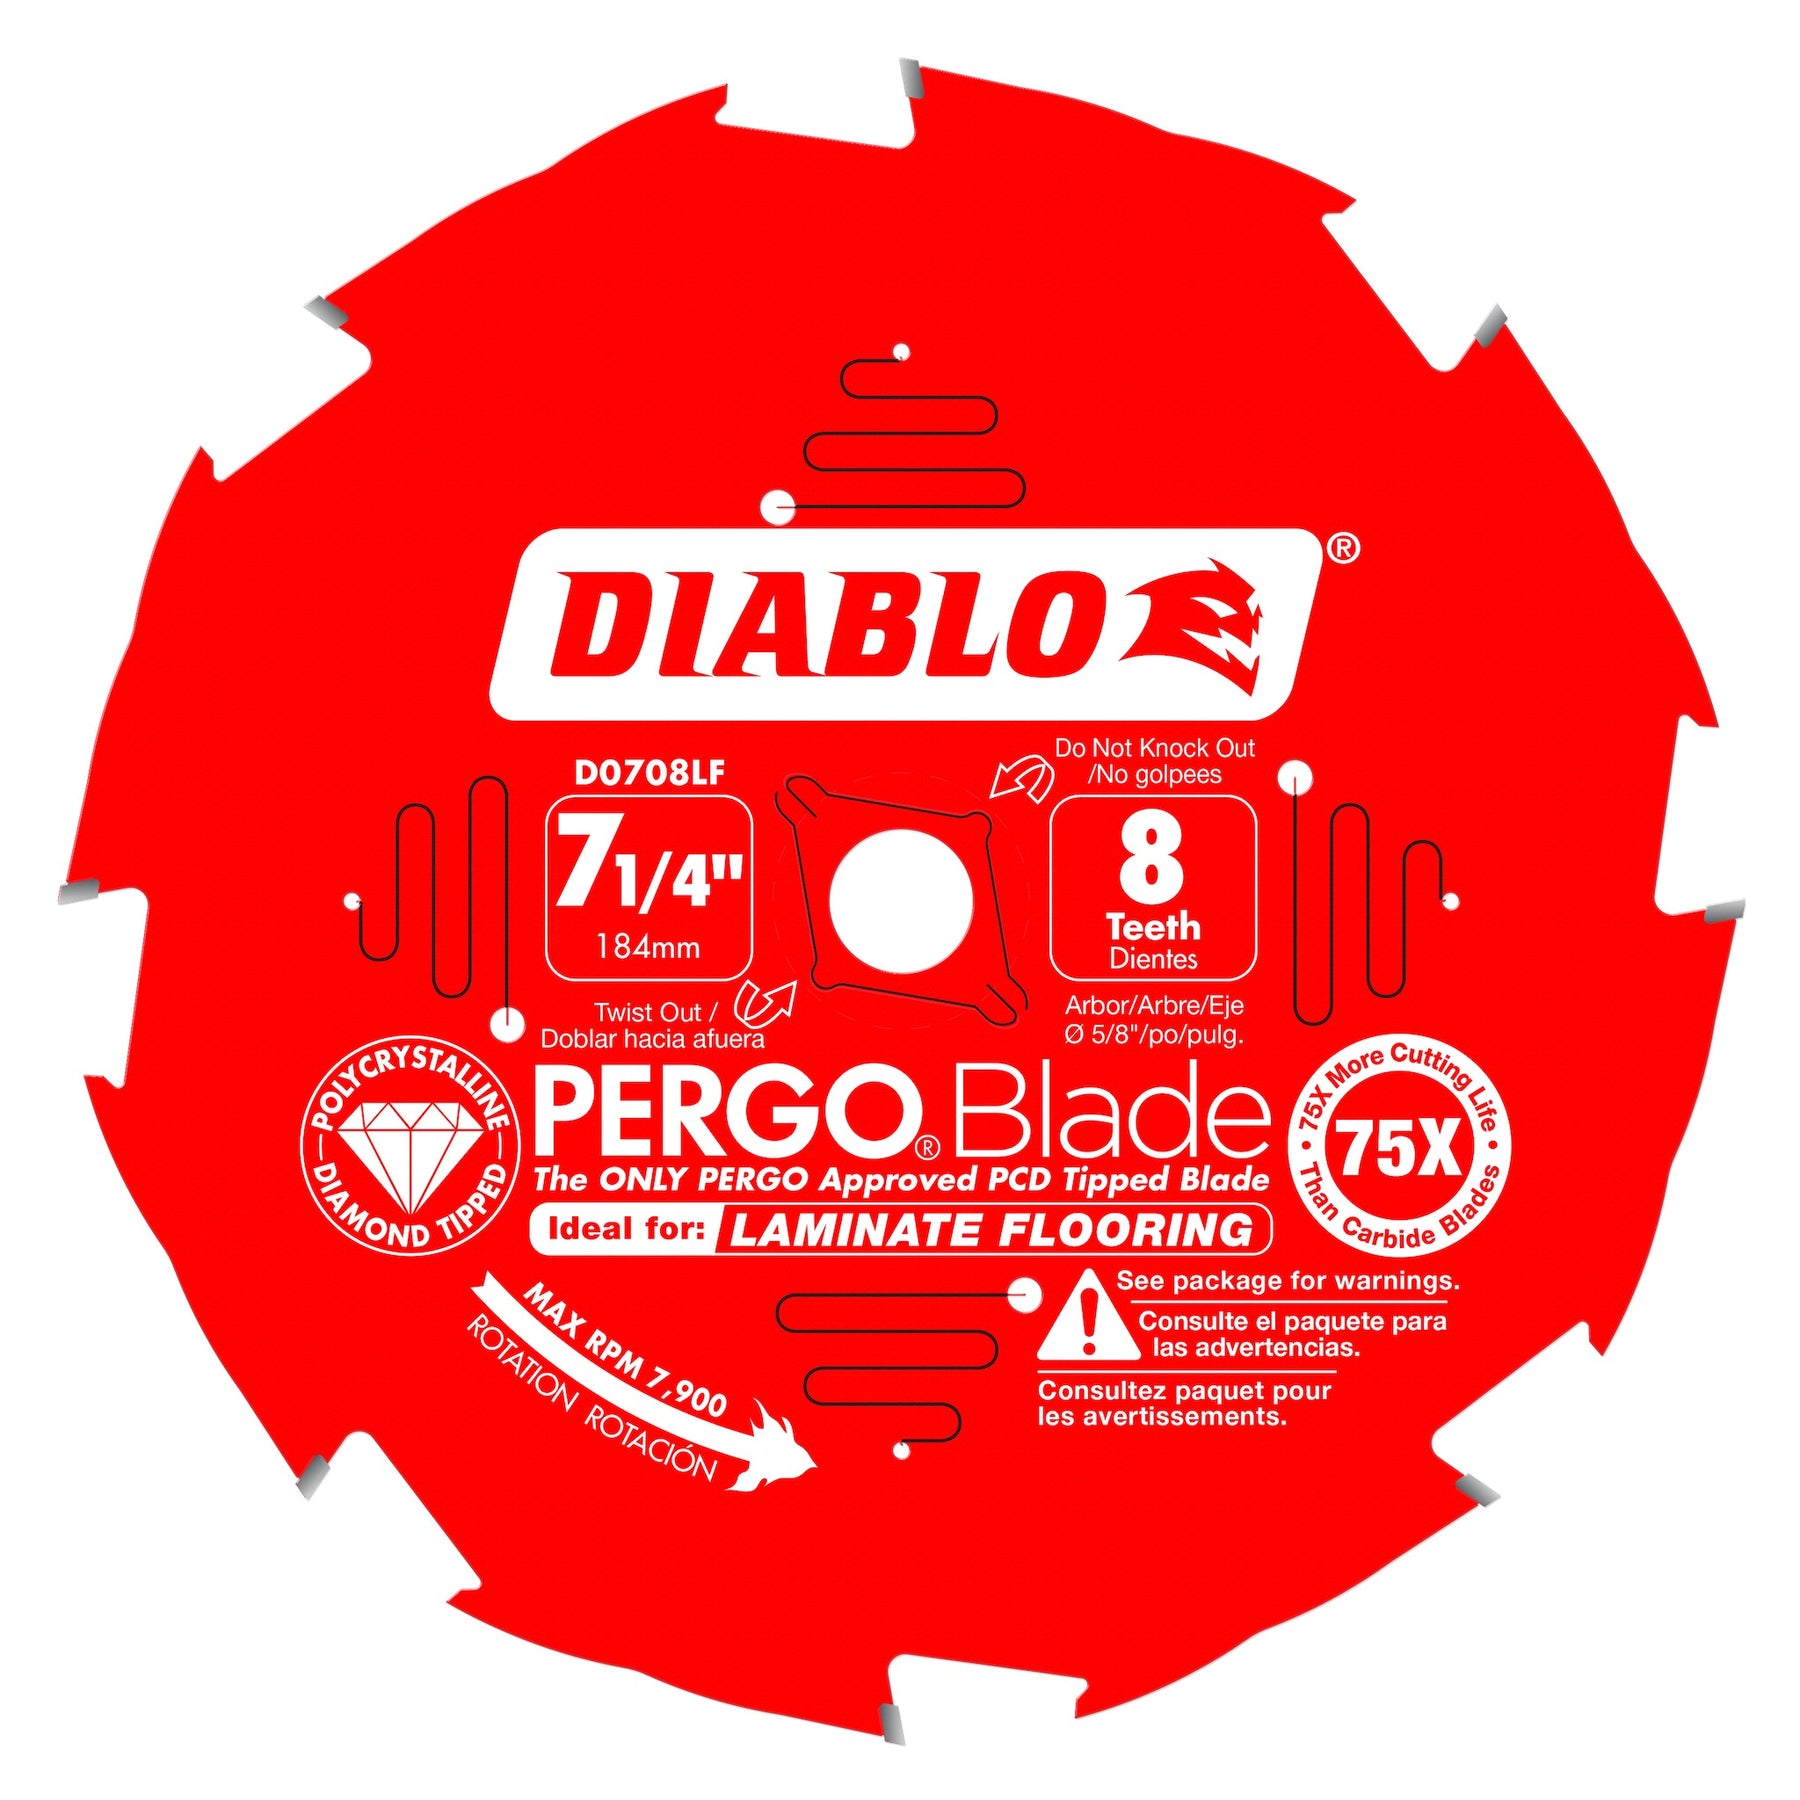 Diablo Laminate Flooring PERGOBlade